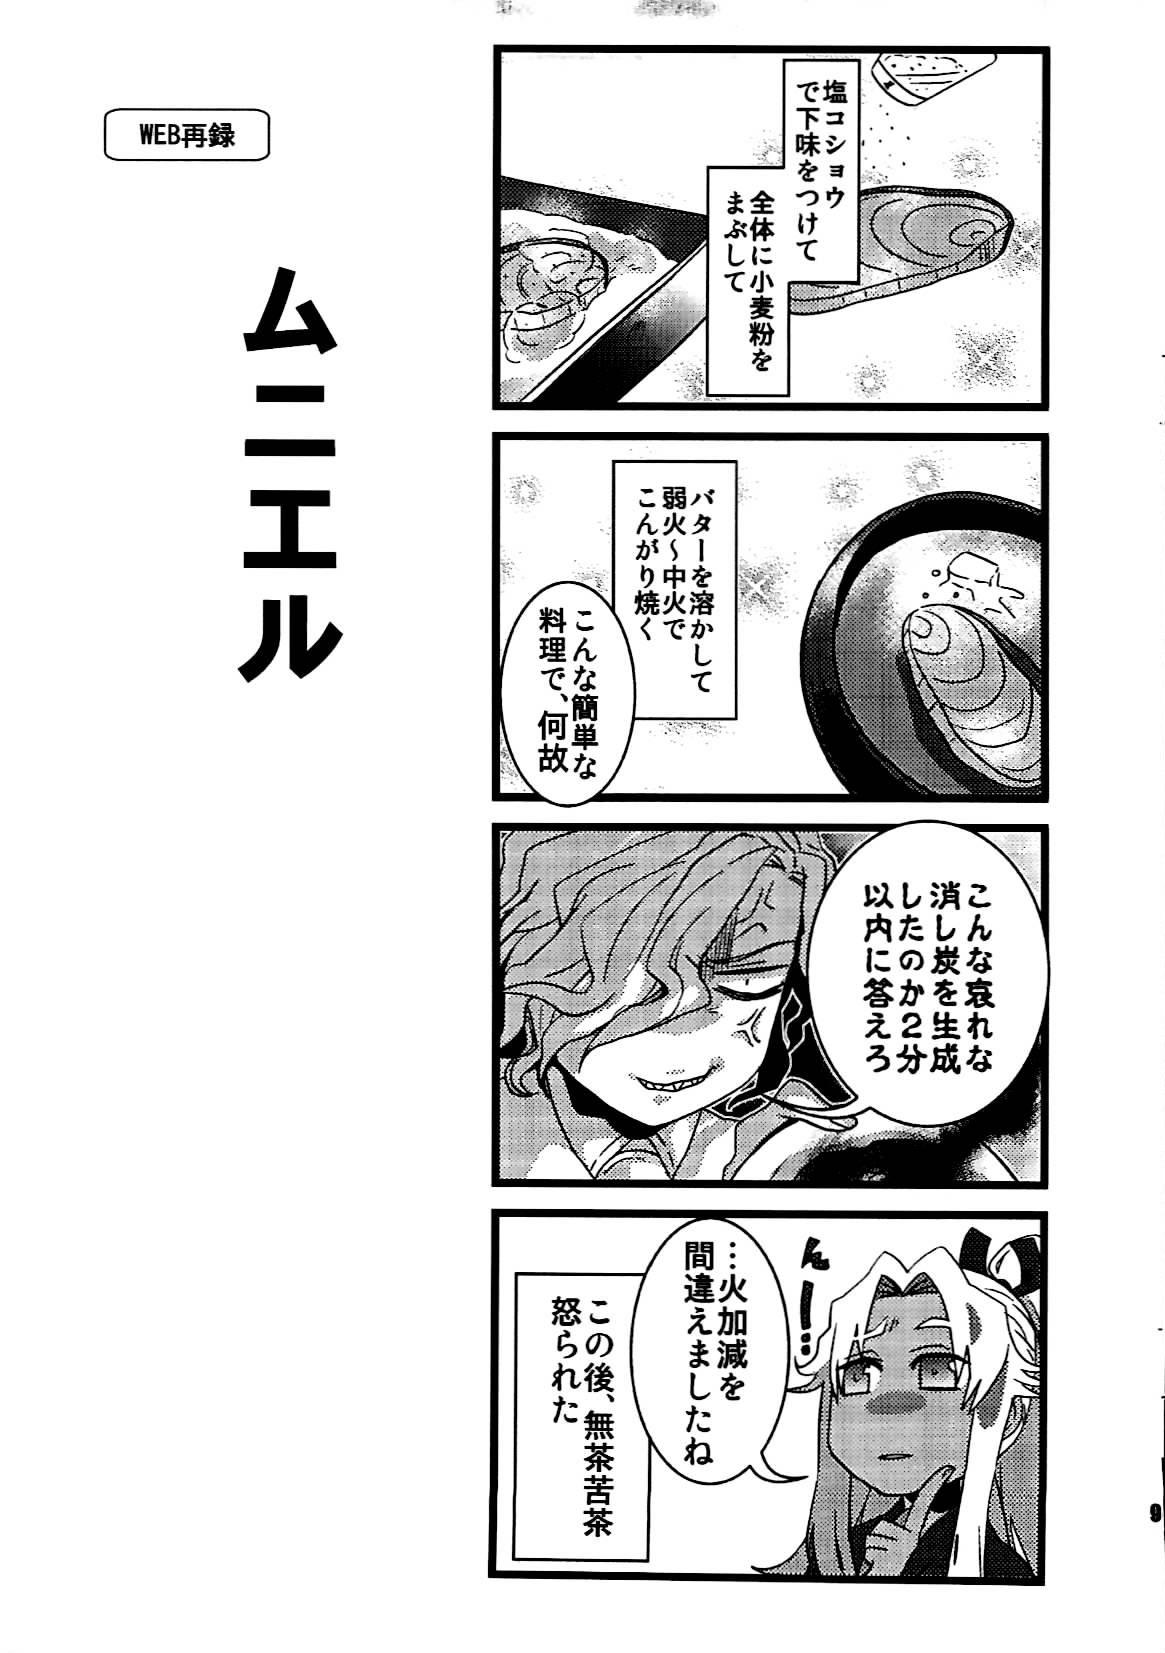 Hidden Camera +7 Edomon to Amakusa ga Fuyuki shi de 7sai no Shirou to ittusyoni - Fate grand order Male - Page 8